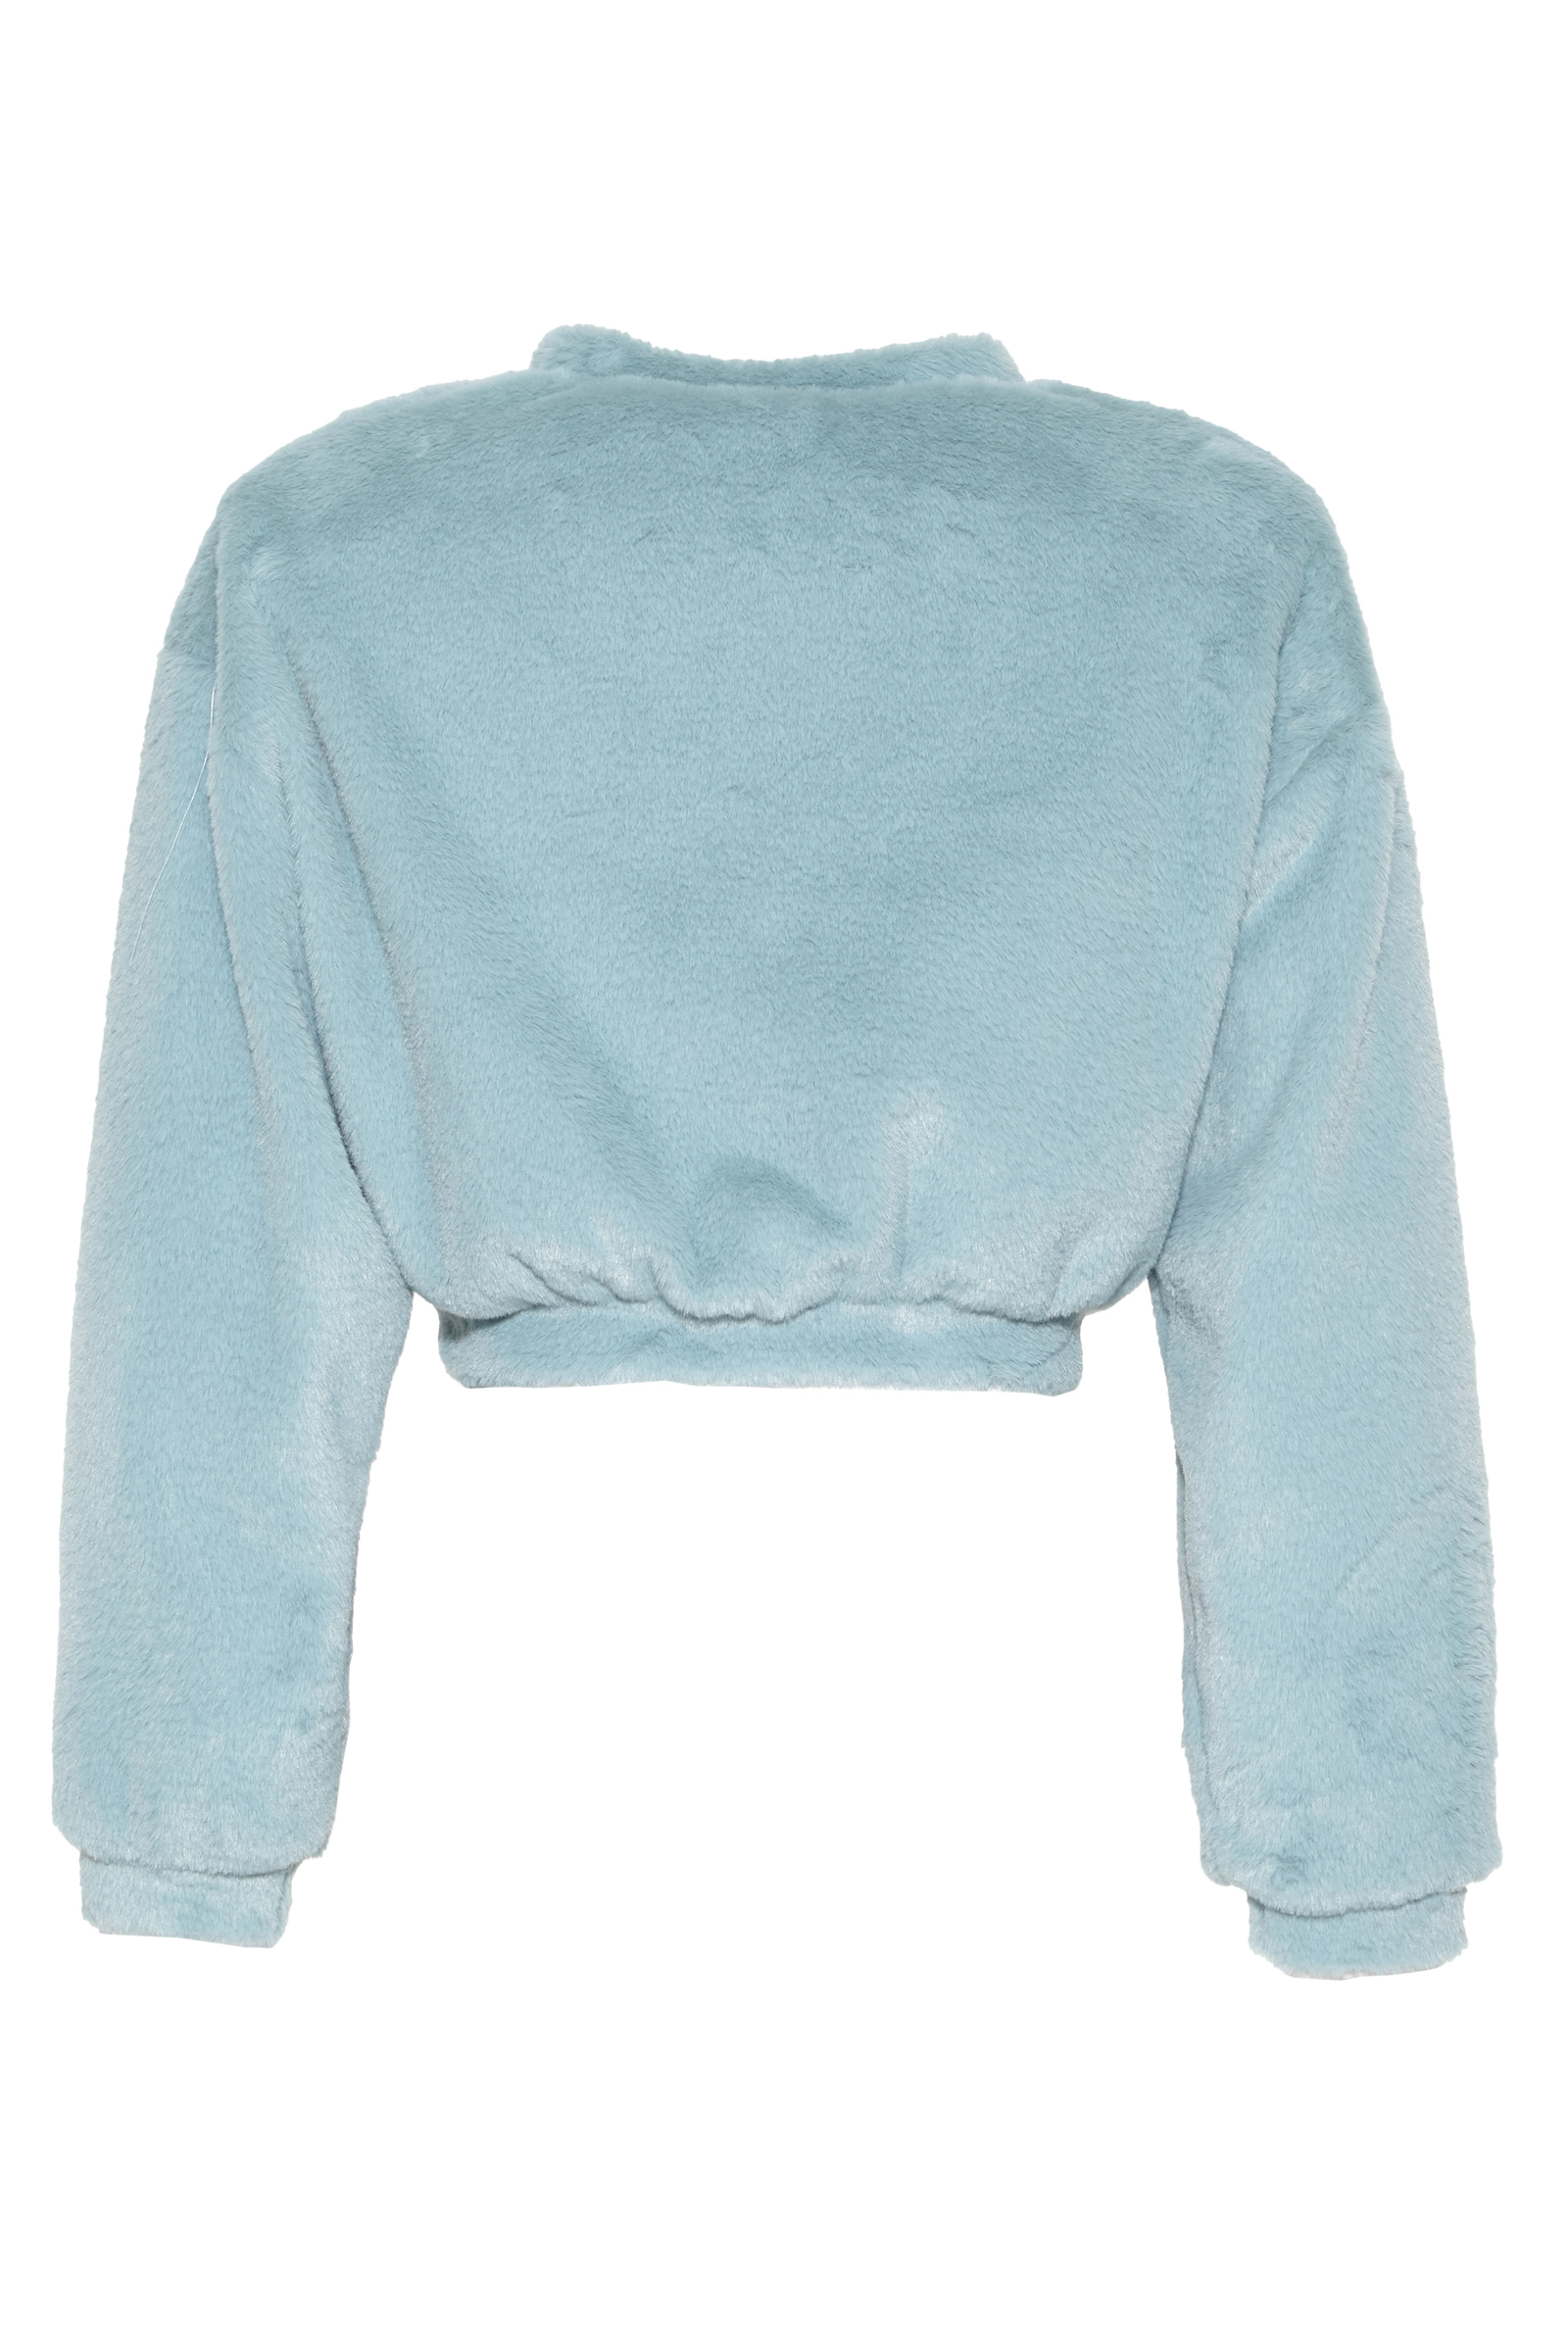 Blue Faux Fur Long Sleeve Sweatshirt